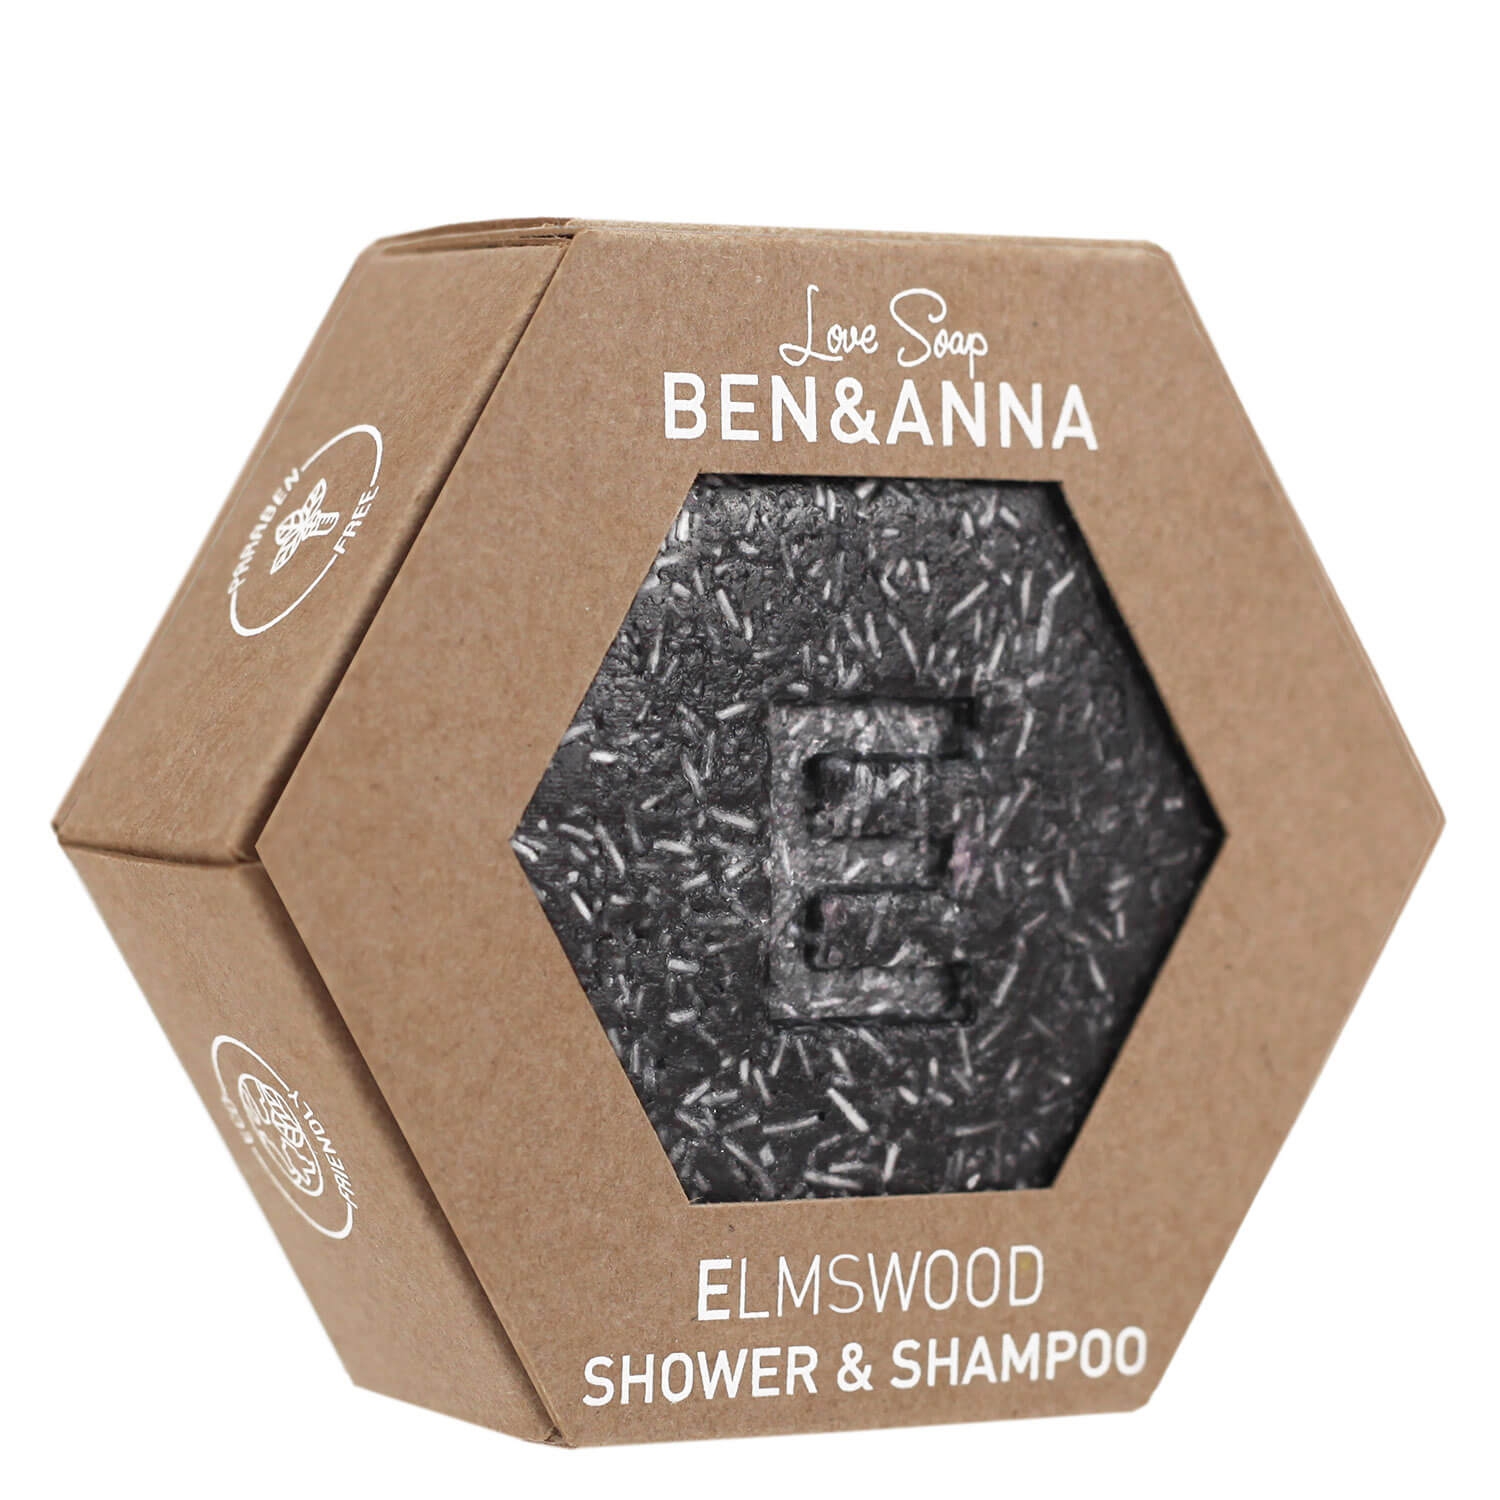 Produktbild von BEN&ANNA - Elmswood Shower & Shampoo